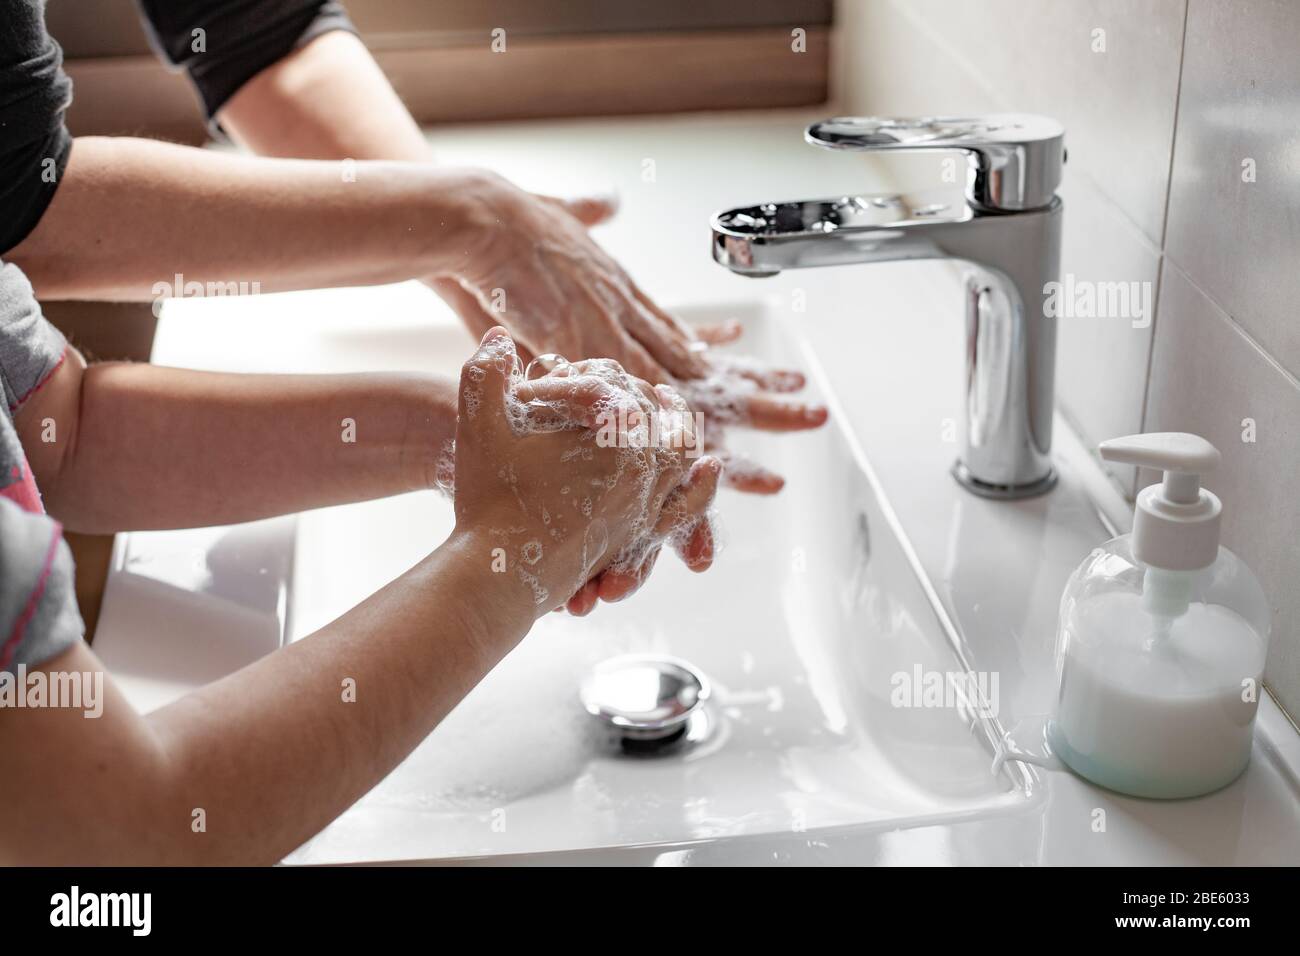 Mère enseignant à sa fille comment se laver correctement les mains avec du savon pour prévenir l'infection du coronavirus Banque D'Images